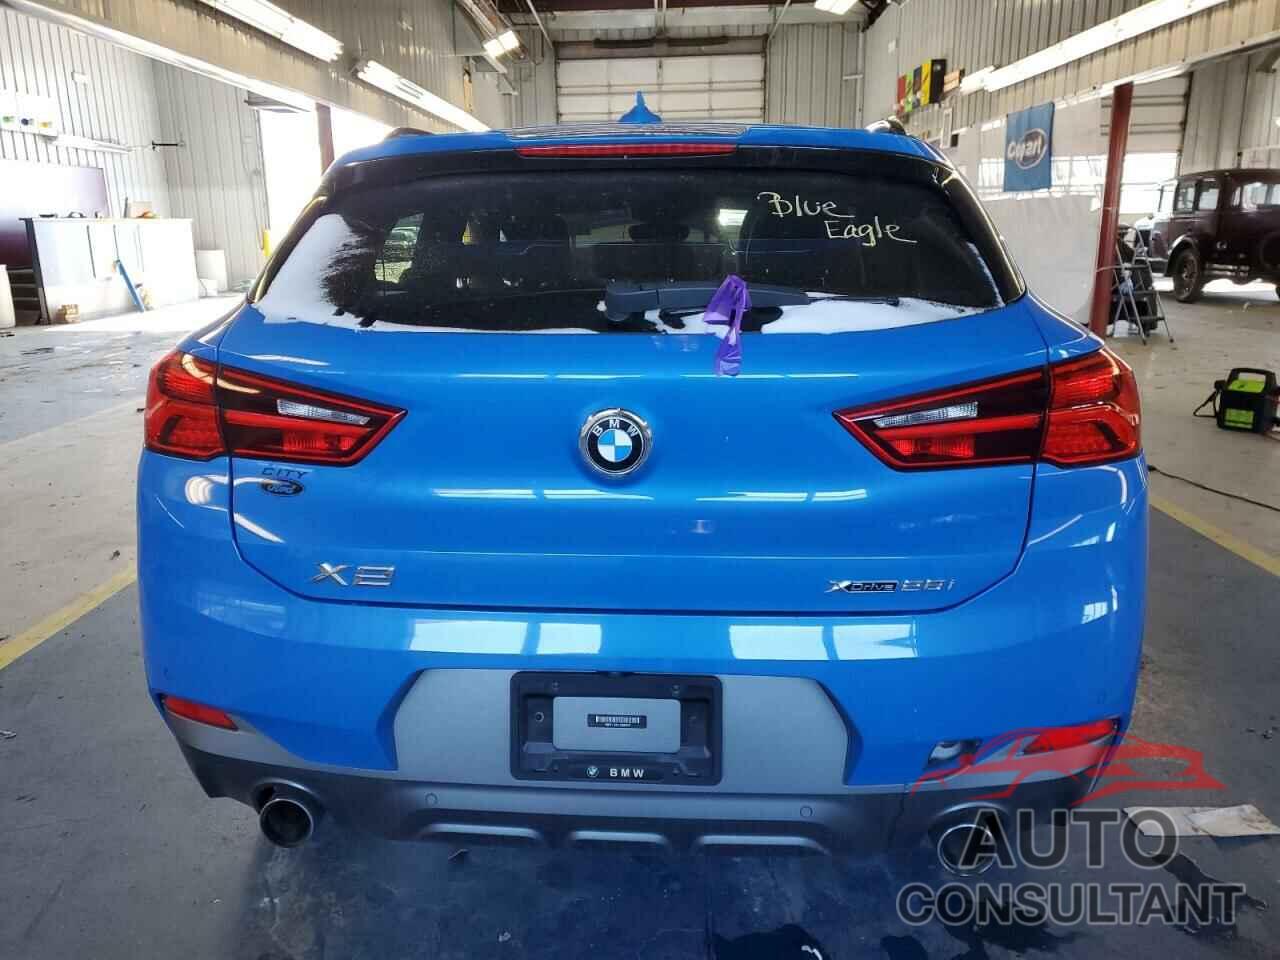 BMW X2 2020 - WBXYJ1C04L5N89162